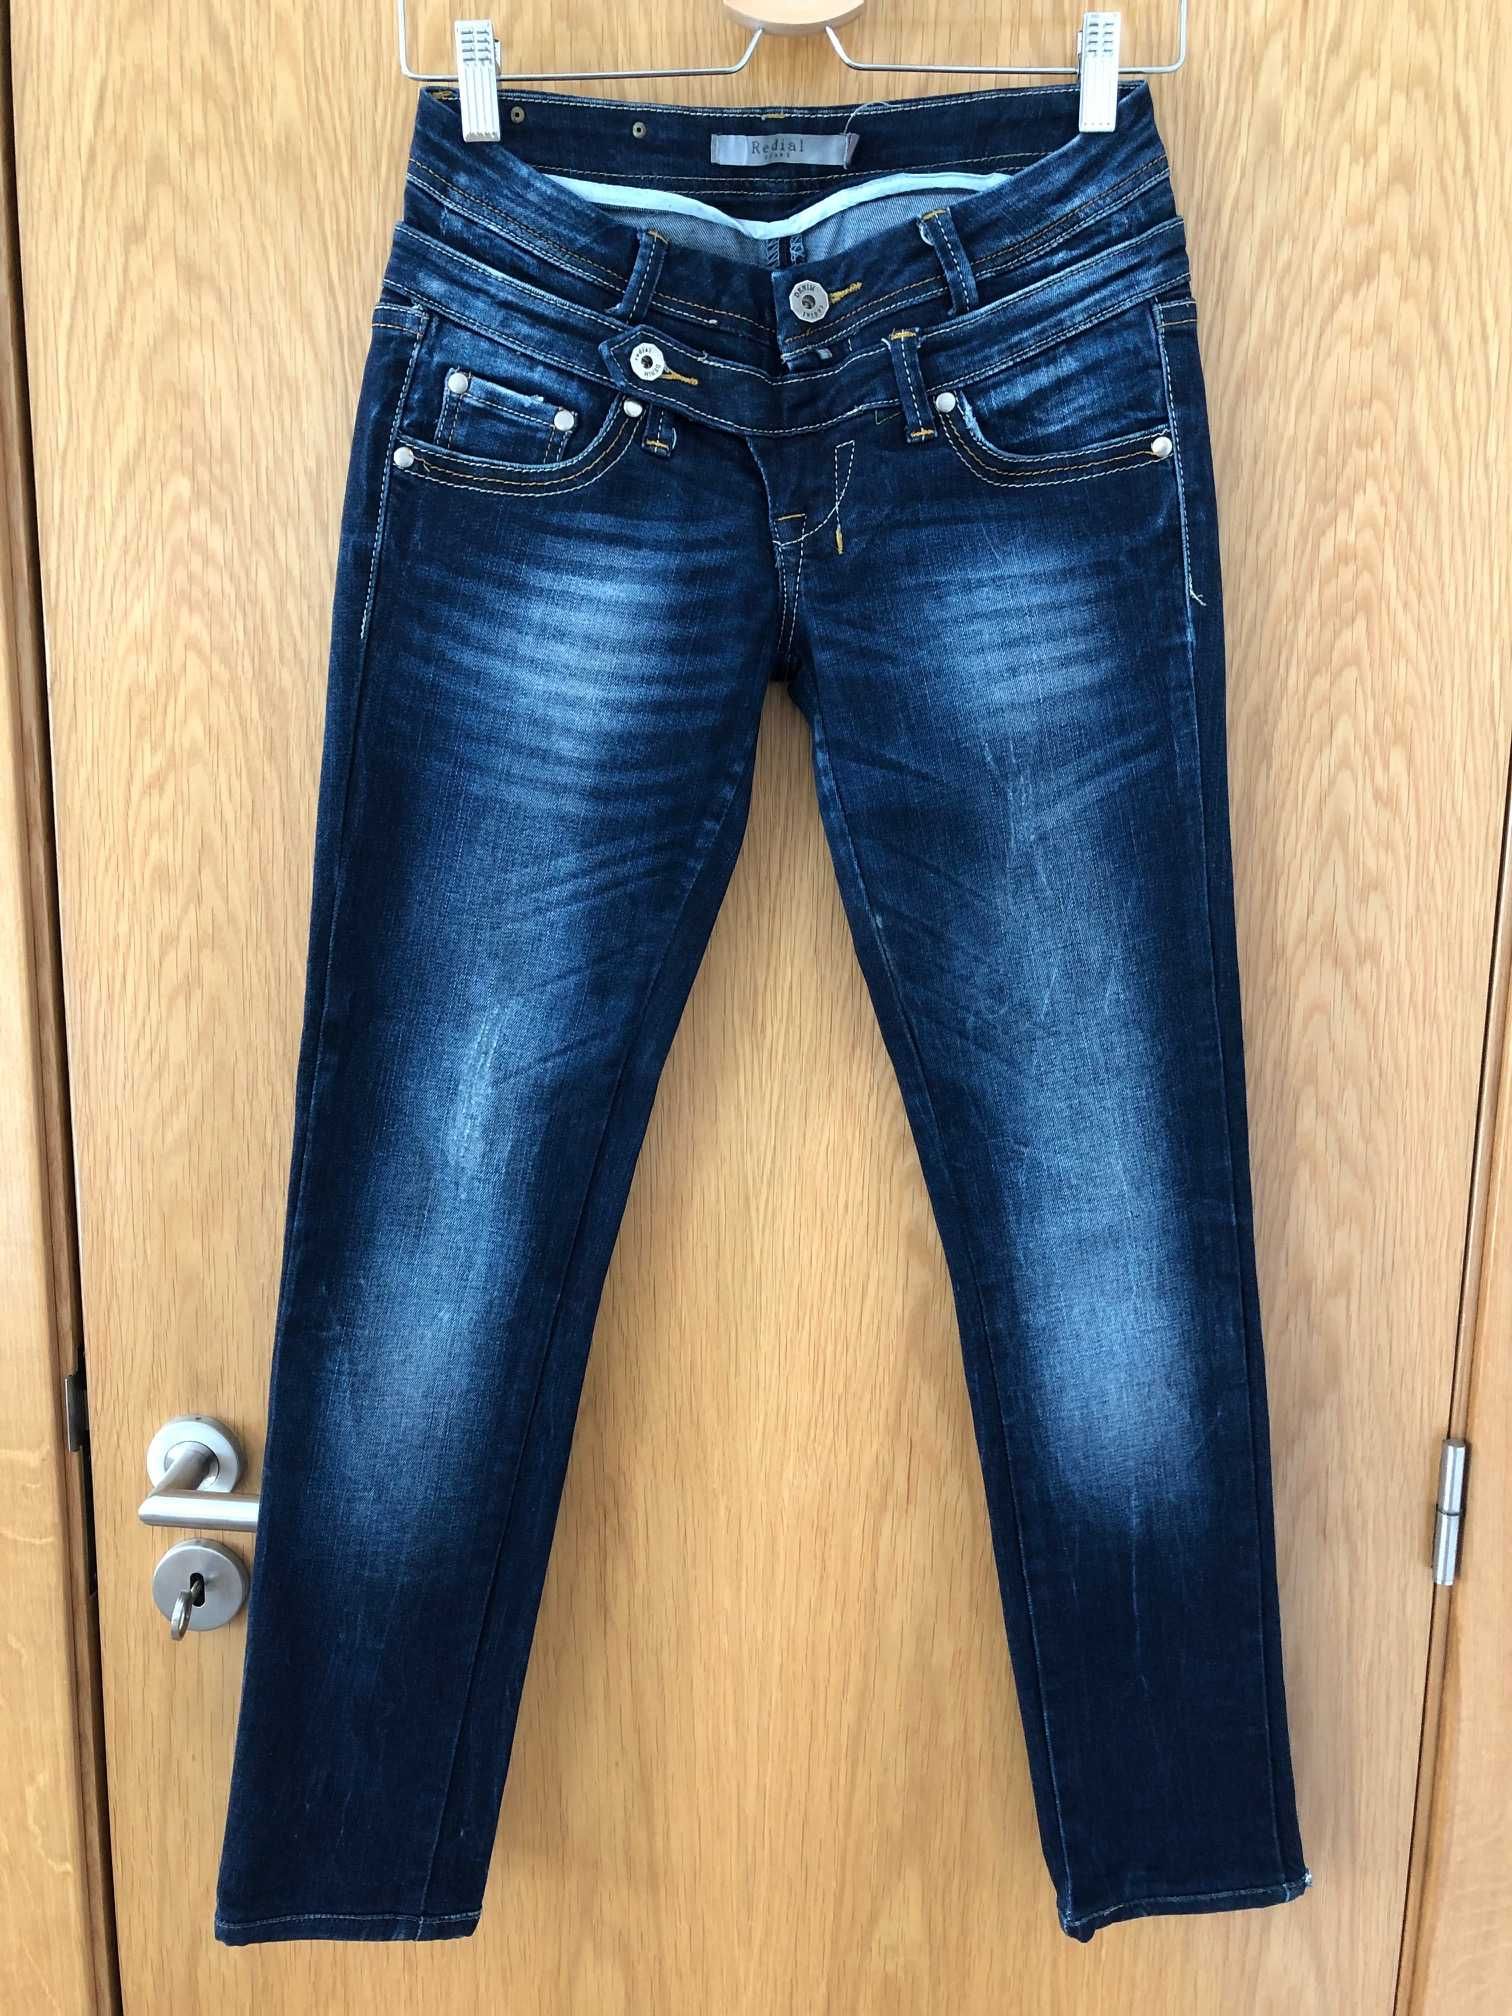 Jeans azul escuro cinta média - tamanho S (36)